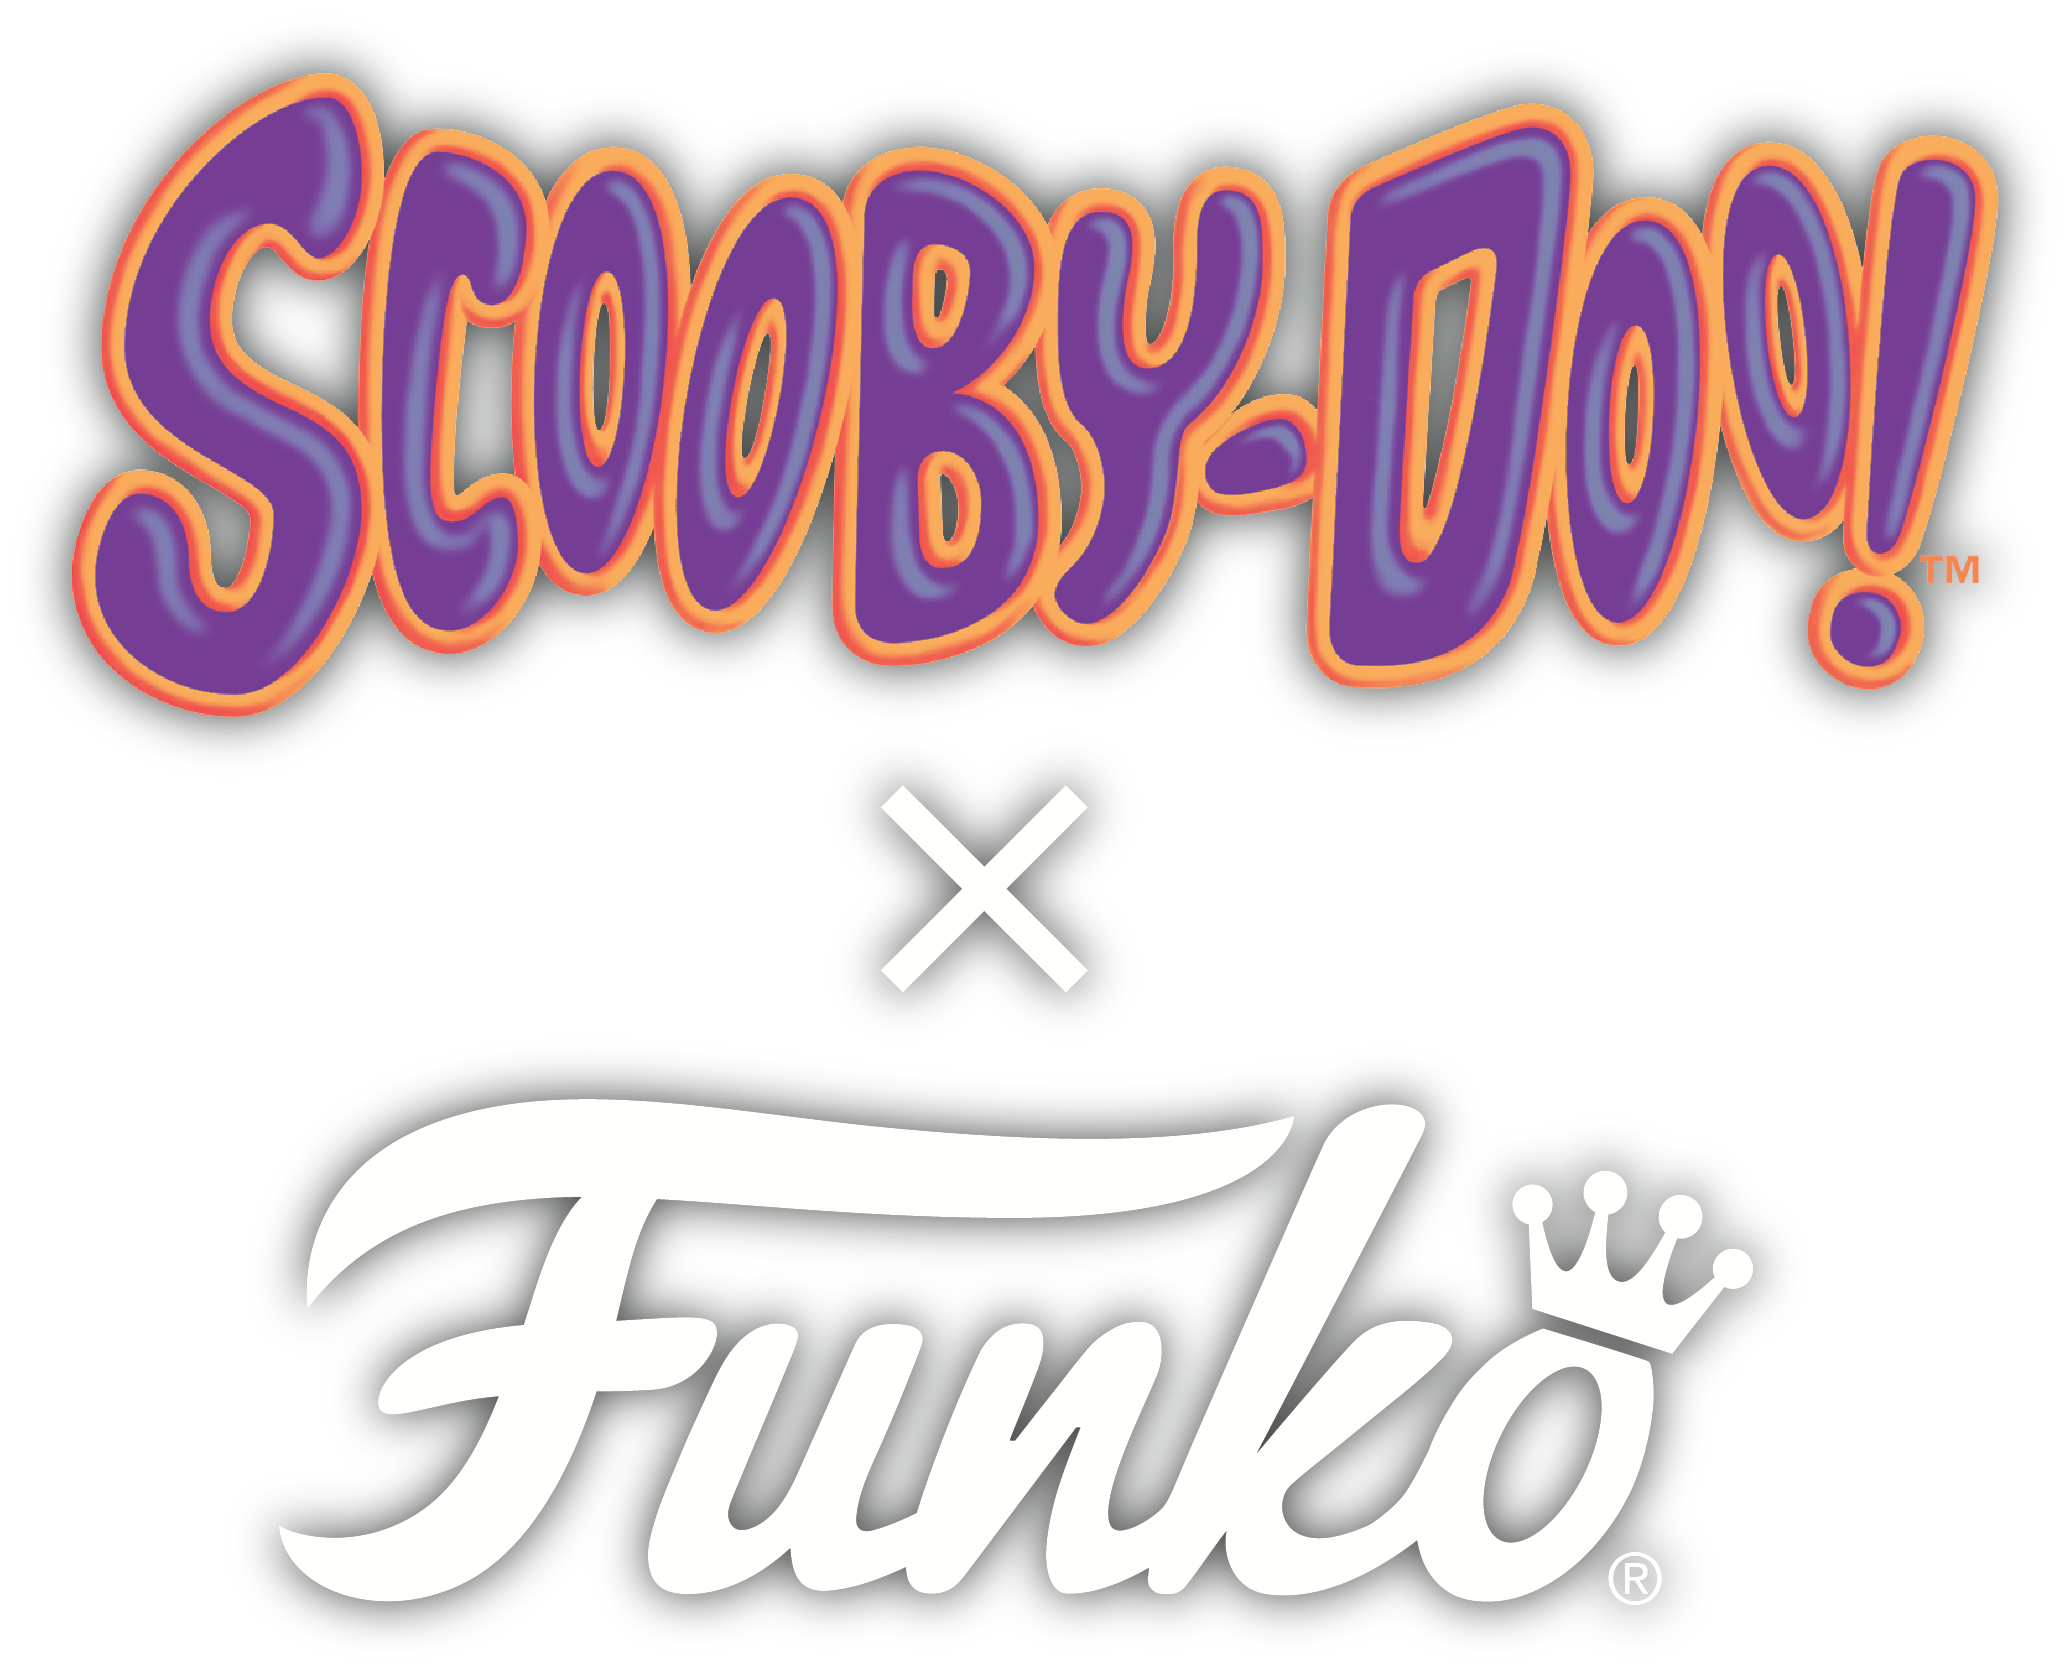 Scooby-Doo Series 1